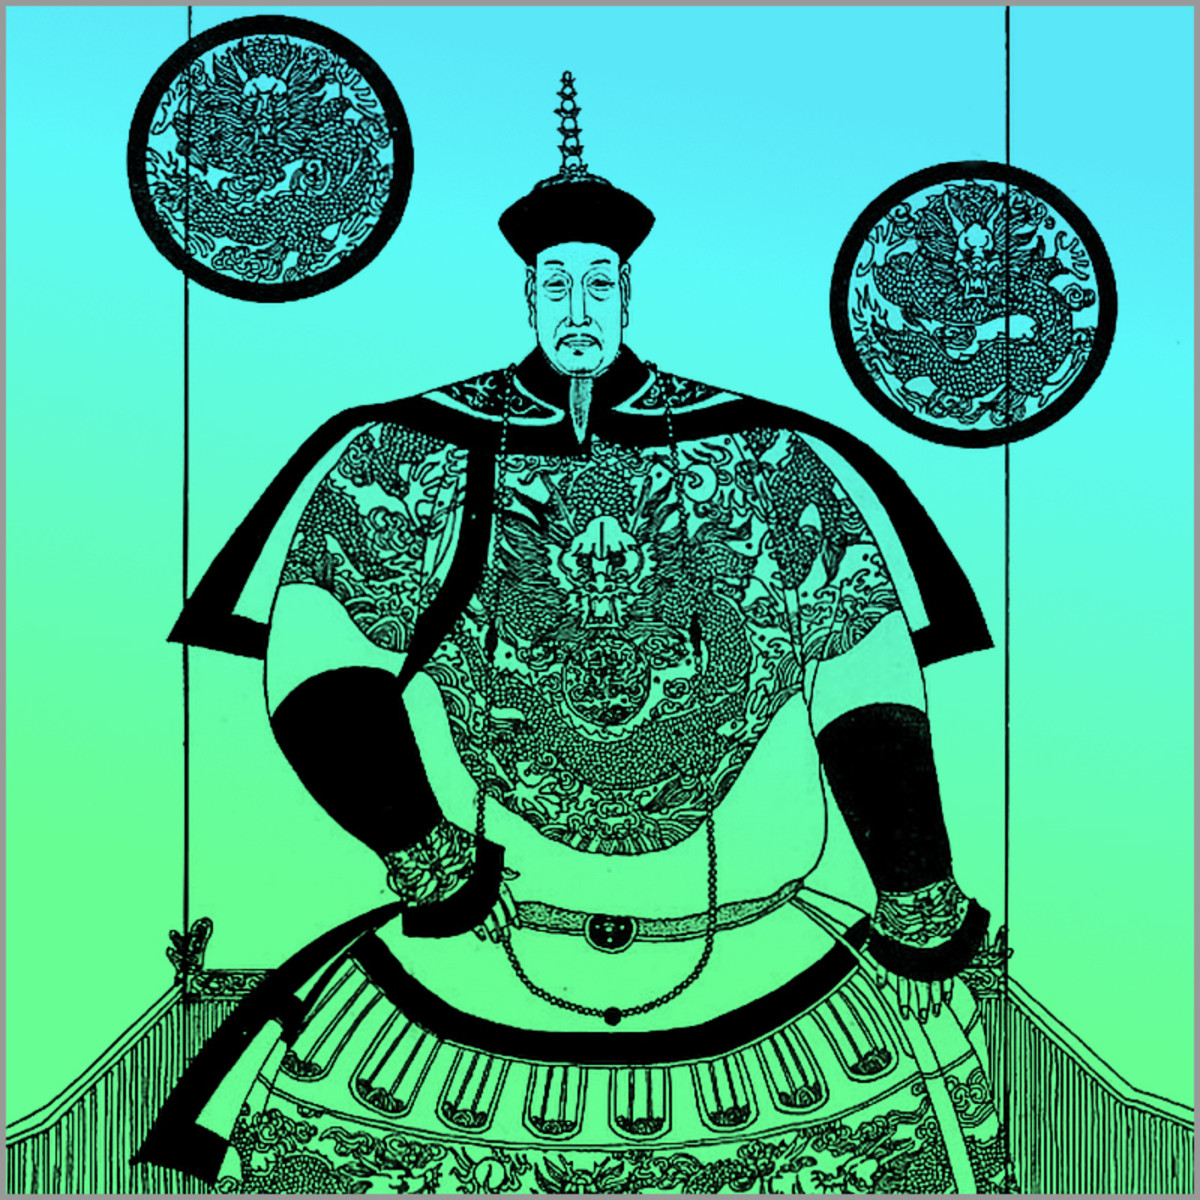 乾隆皇帝晚年自诩为“十度老人”。然而，他的繁荣与和平统治确实使他成为中国最伟大的皇帝之一。